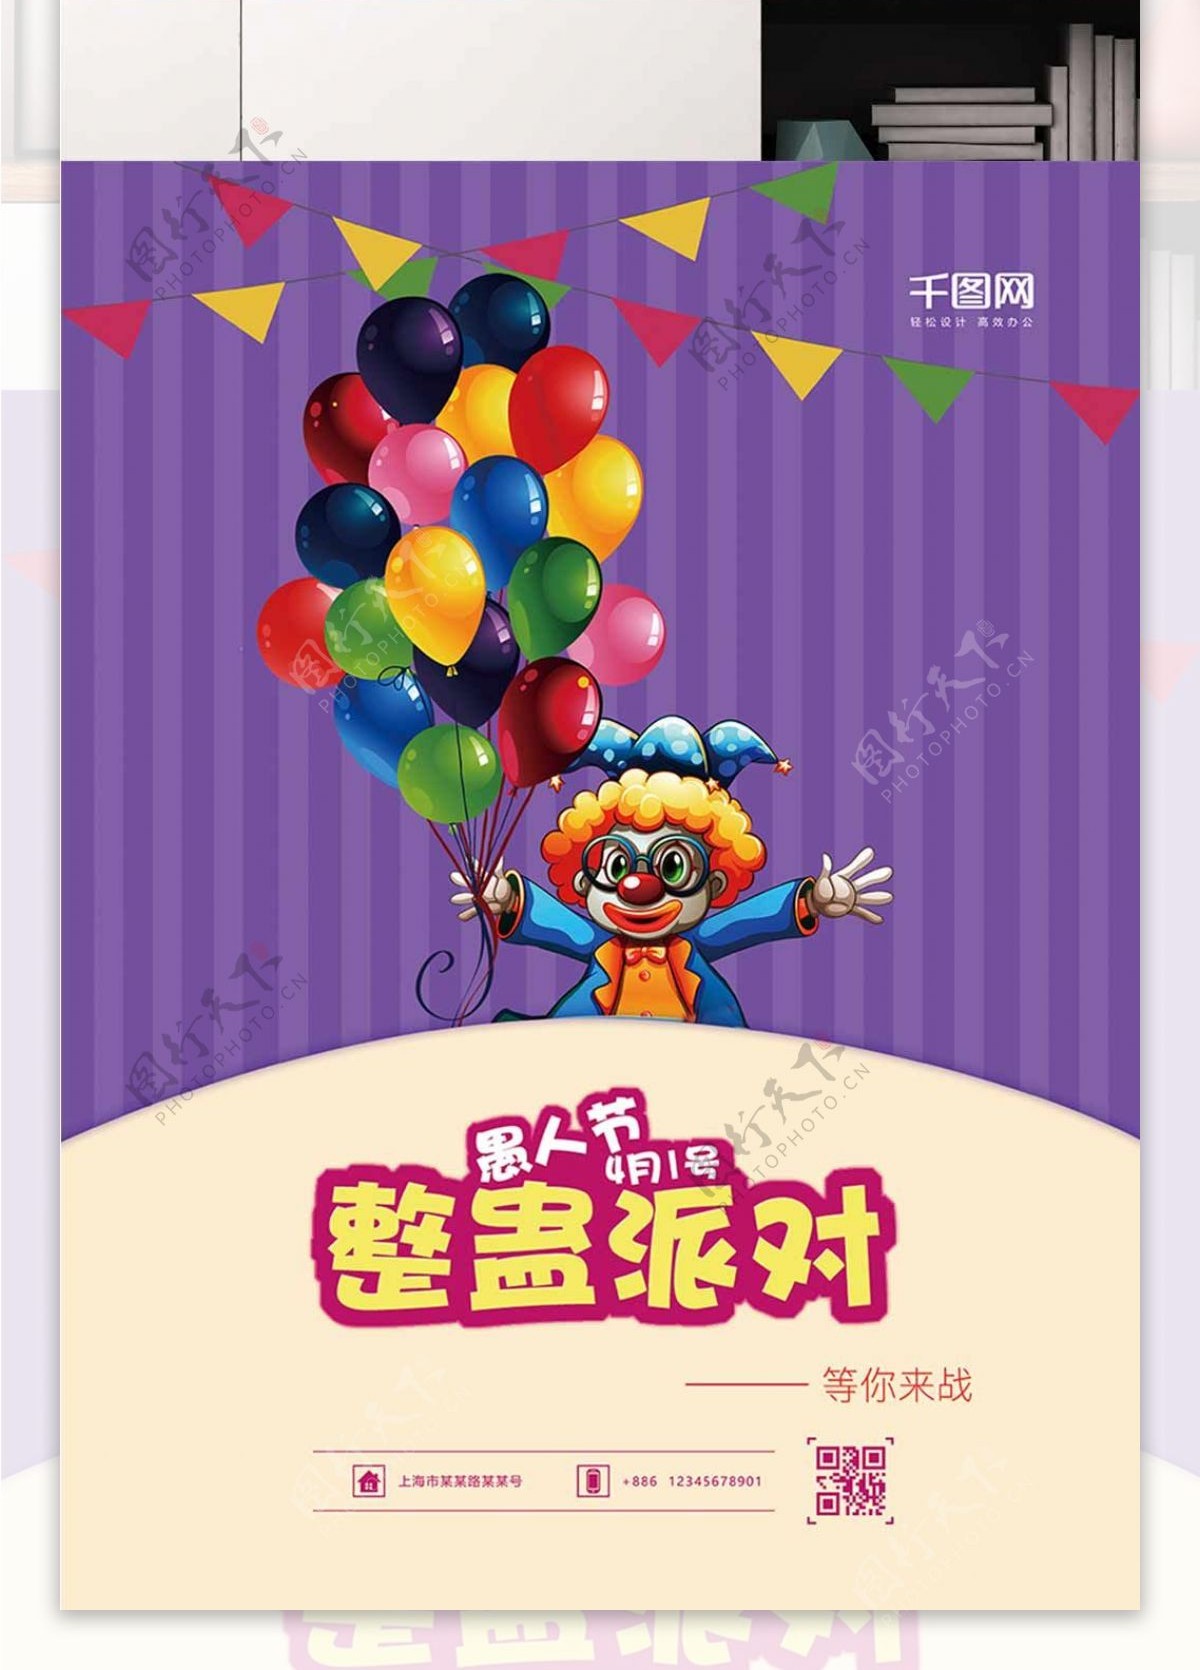 愚人节小丑紫色条纹背景海报